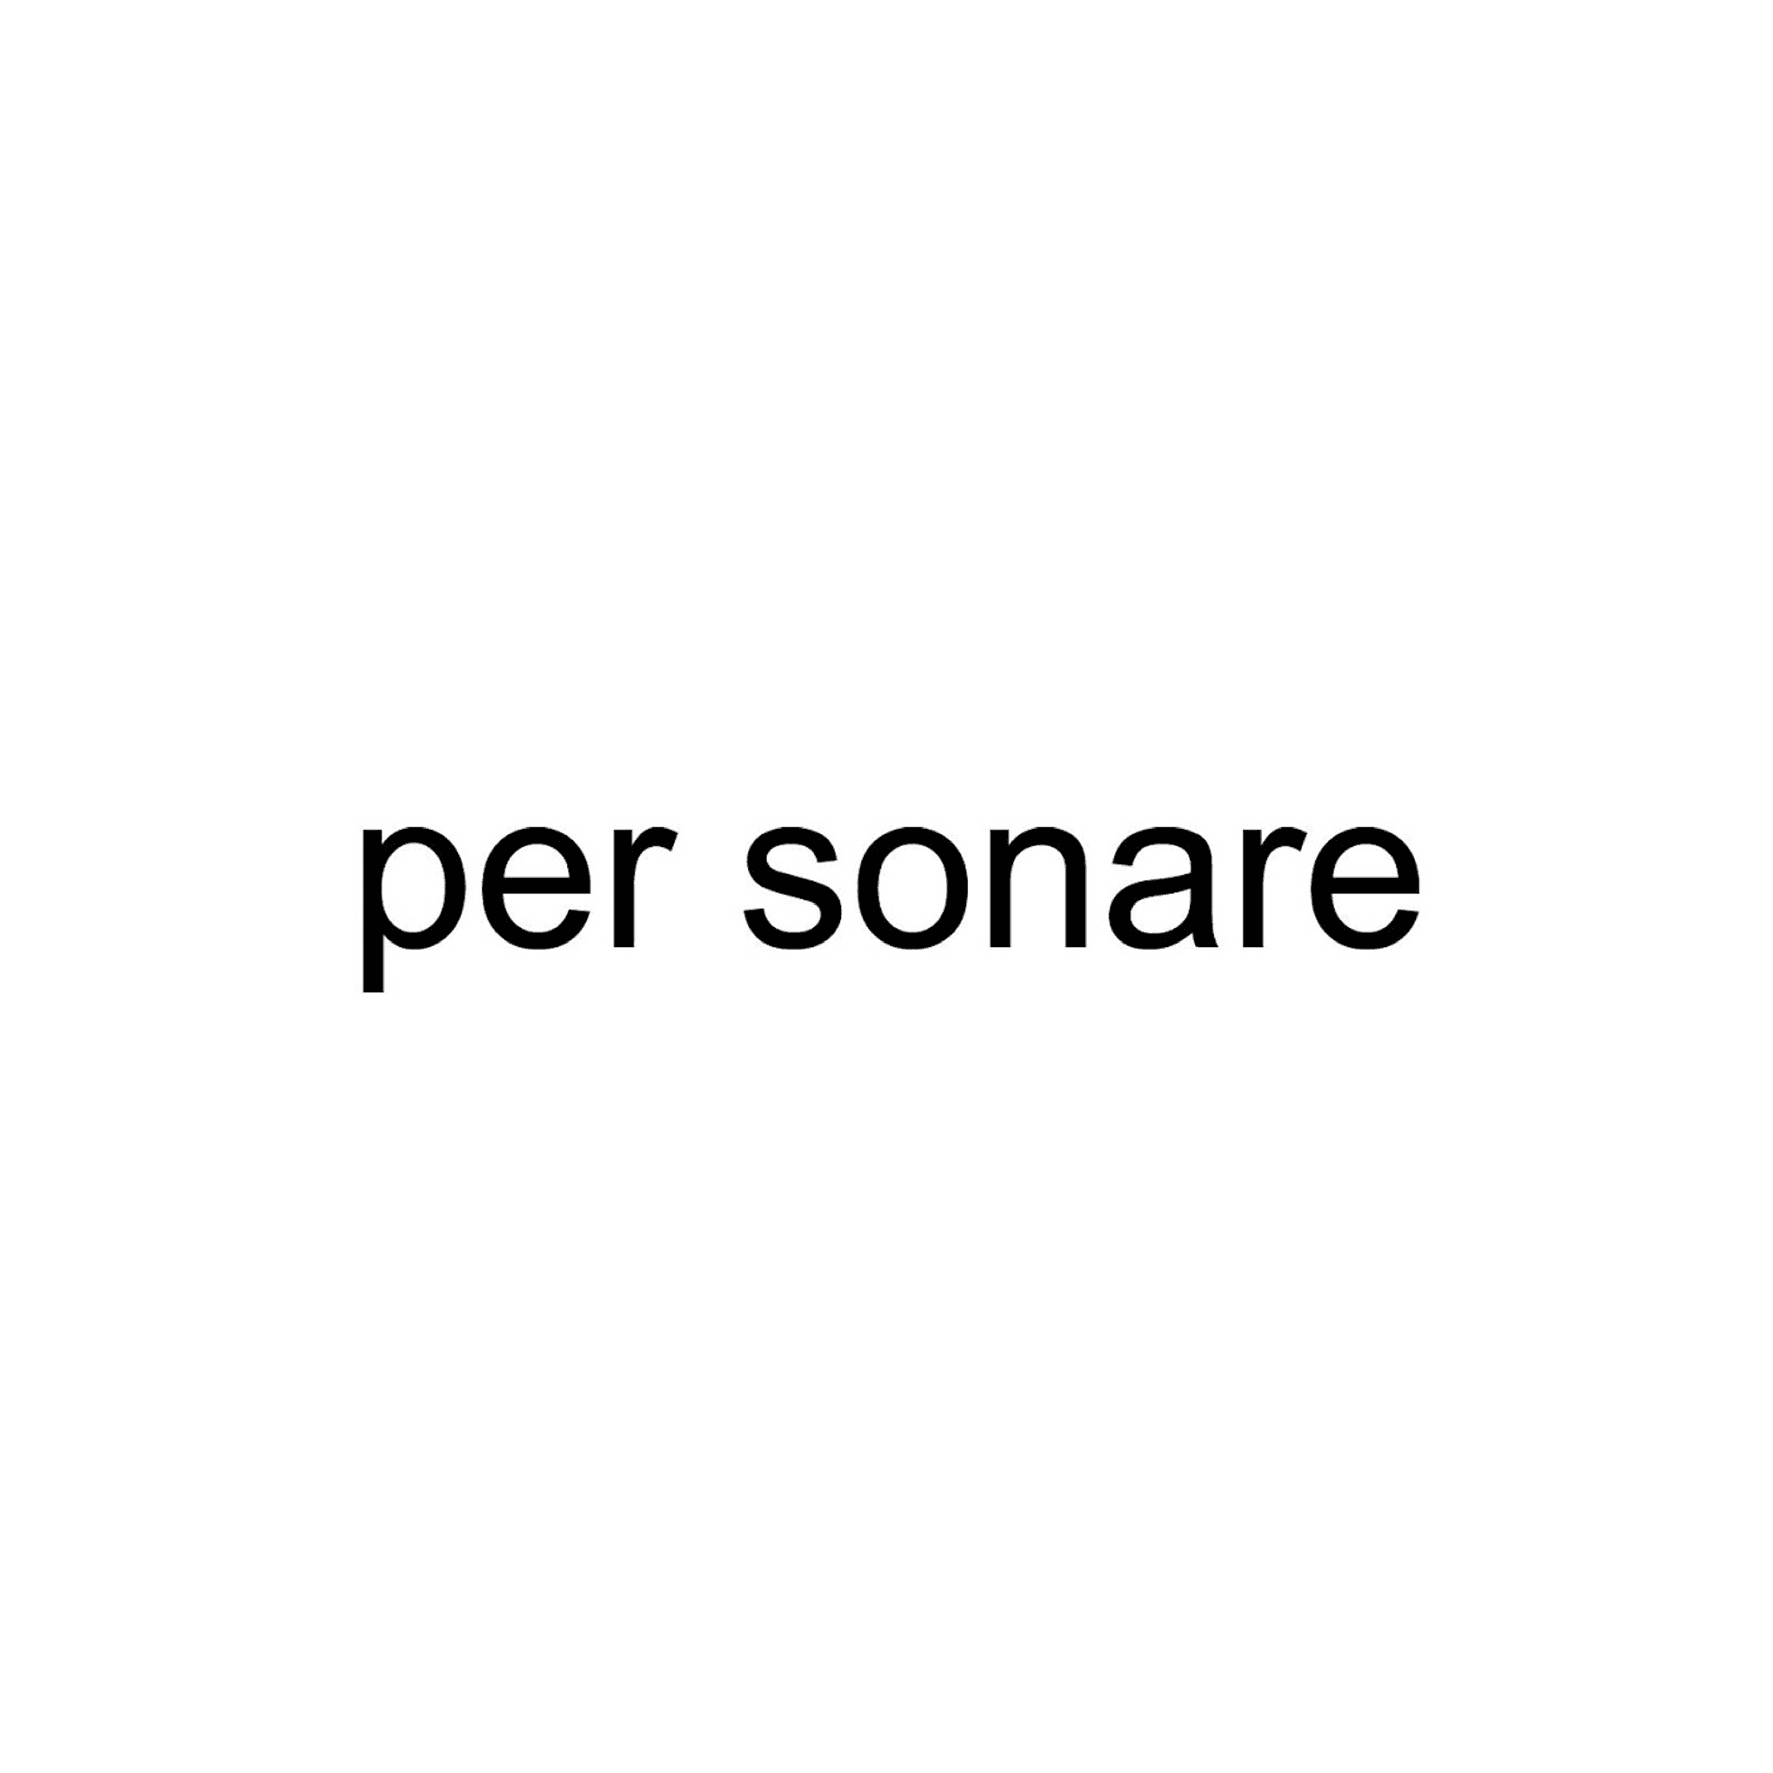 per_sonare 橫幅